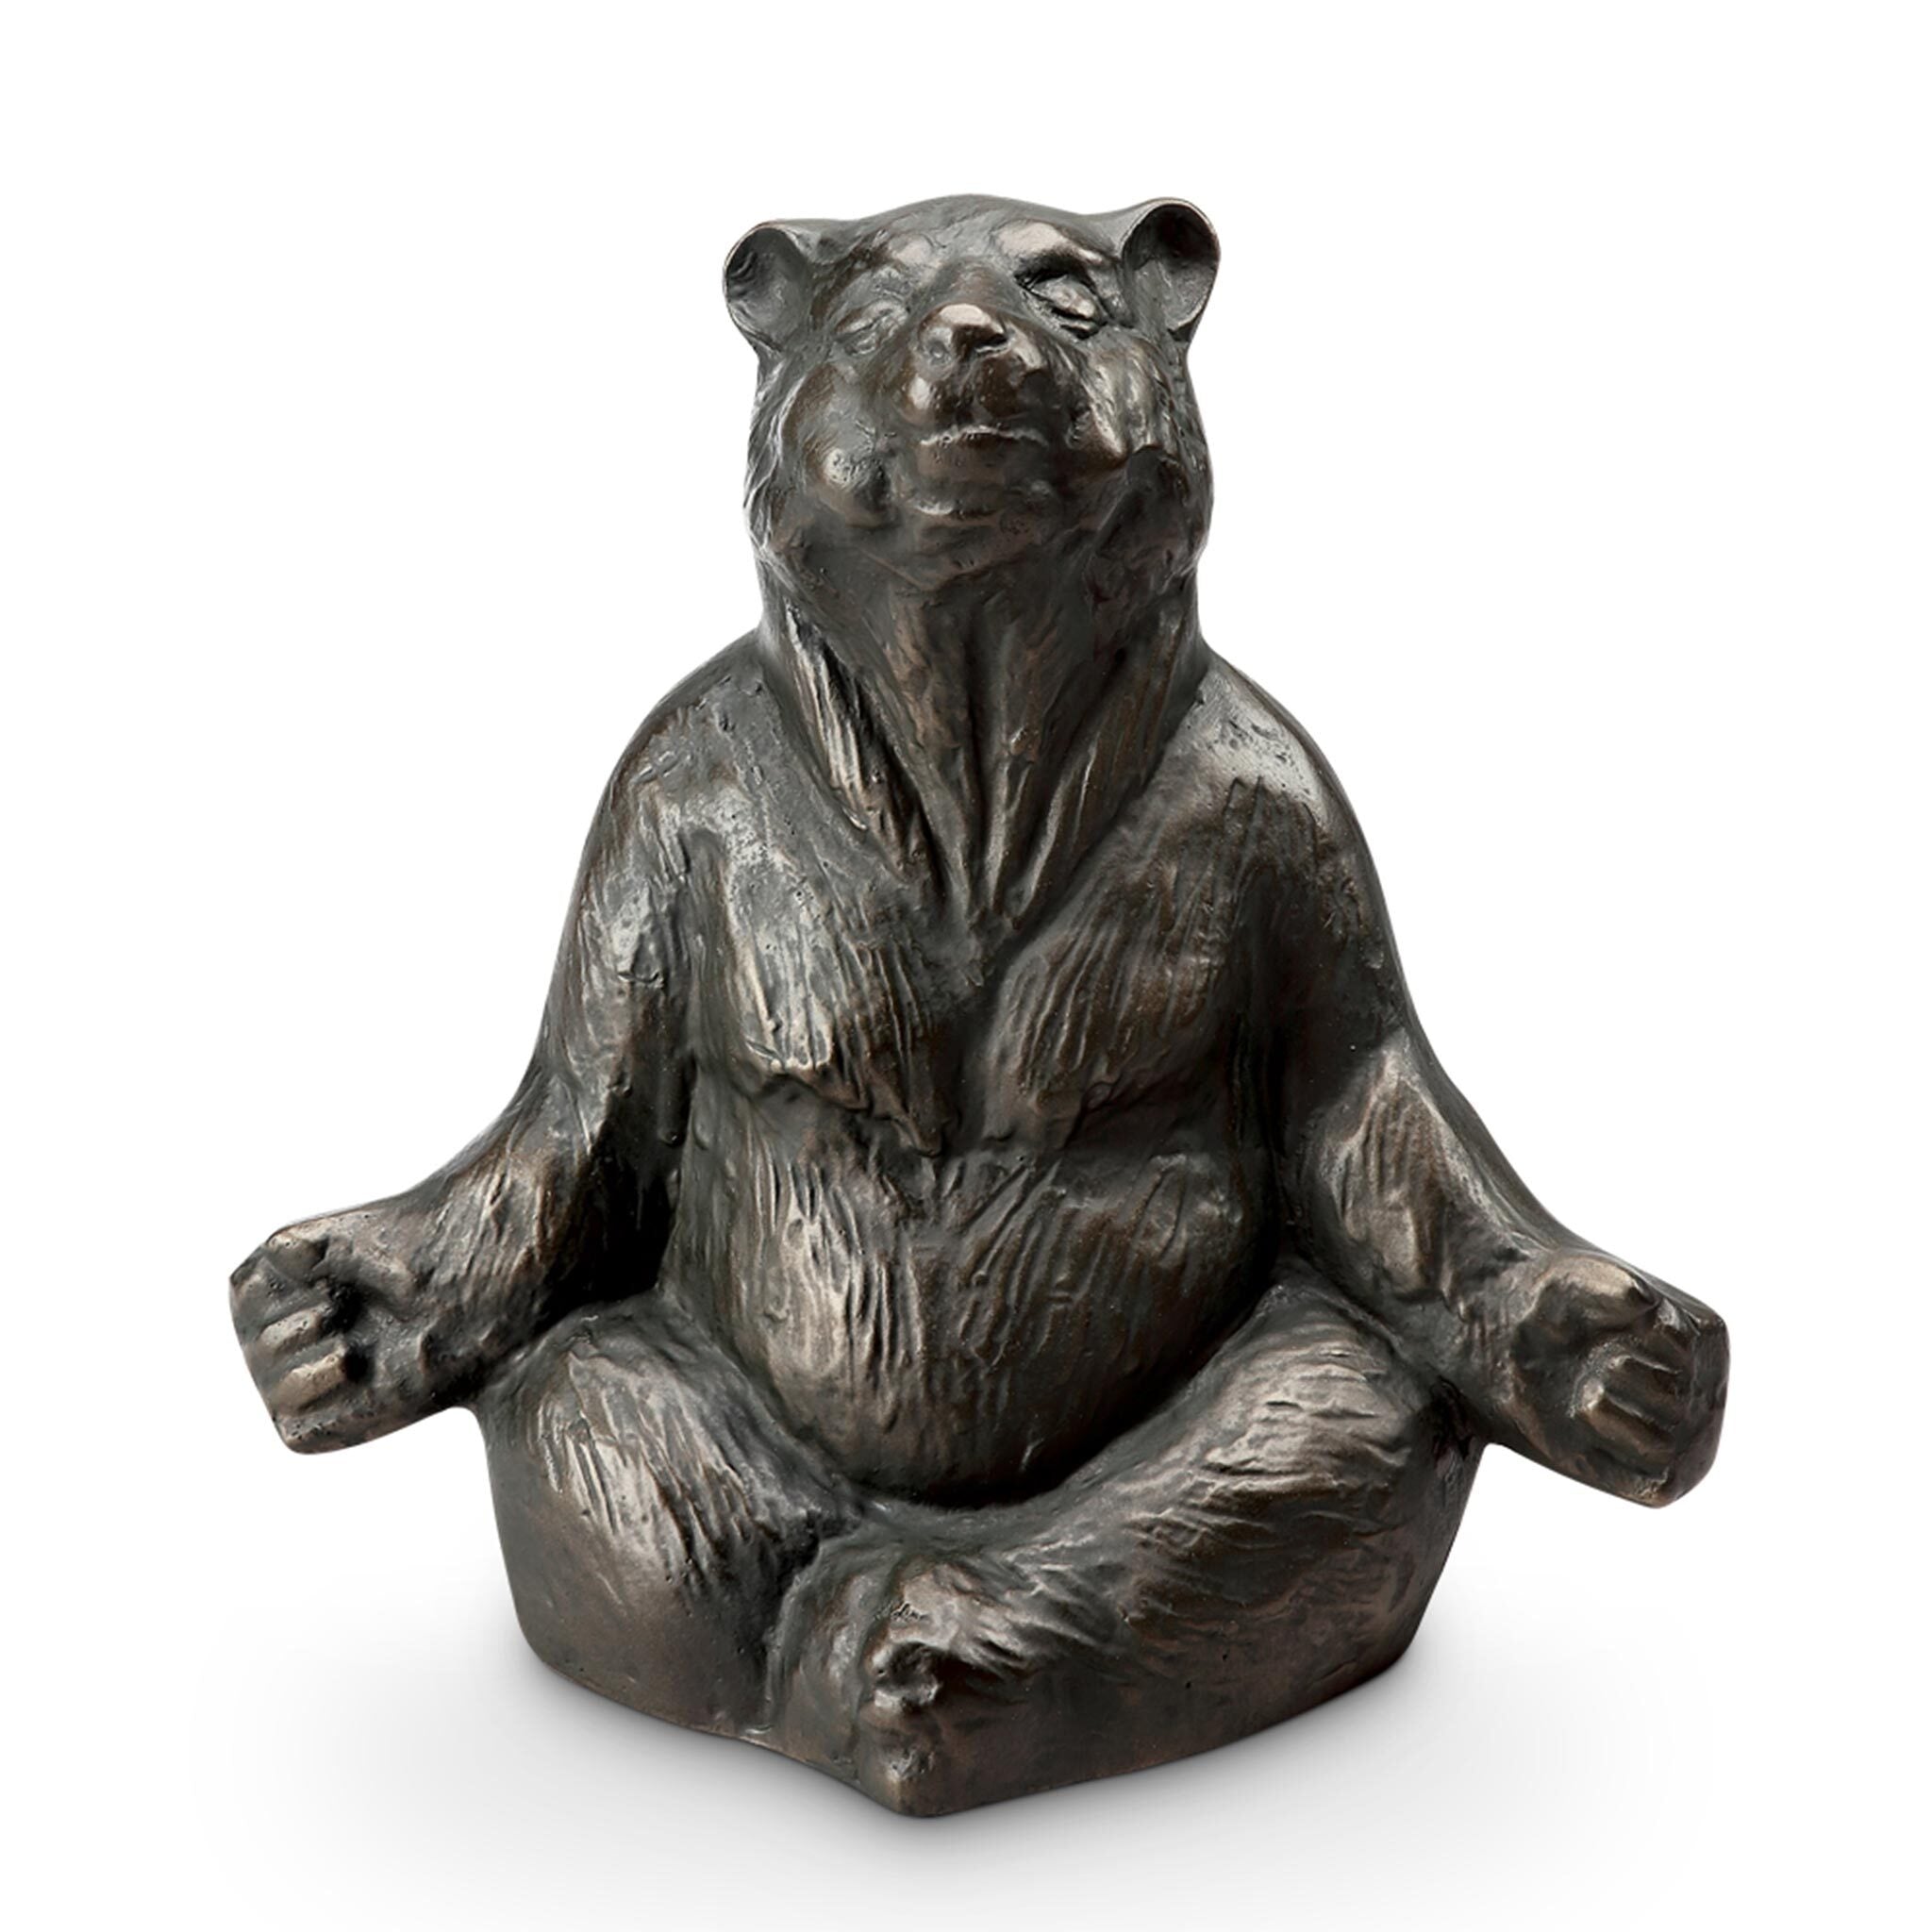 Contented Yoga Bear Garden Sculpture #2